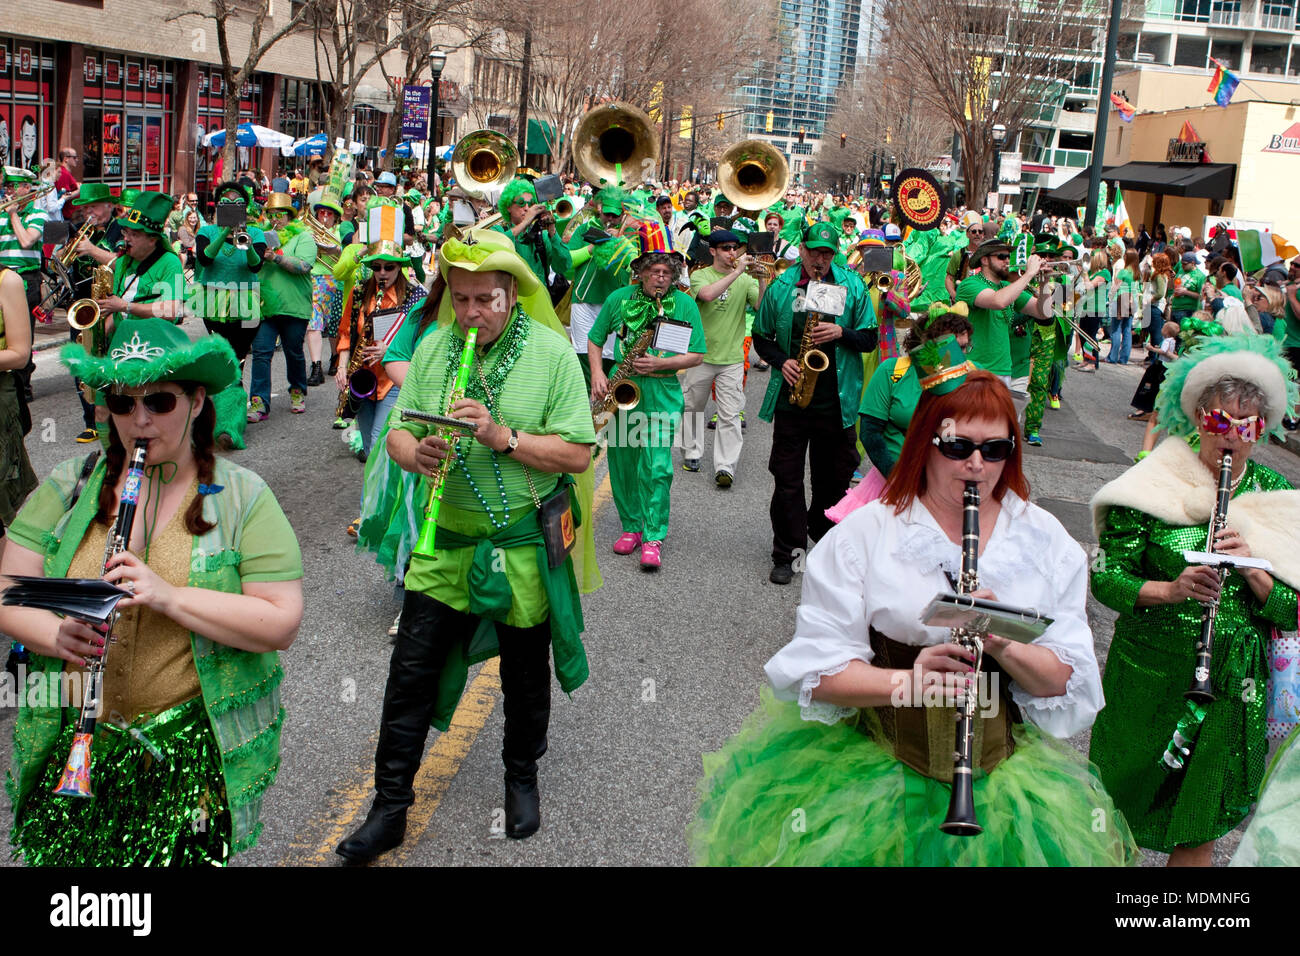 Atlanta, GA, USA - 15. März 2014: eine Band im eklektischen grüne Kostüme gekleidet, spielt während der Parade des St. Patrick's down Peachtree Street marschieren. Stockfoto